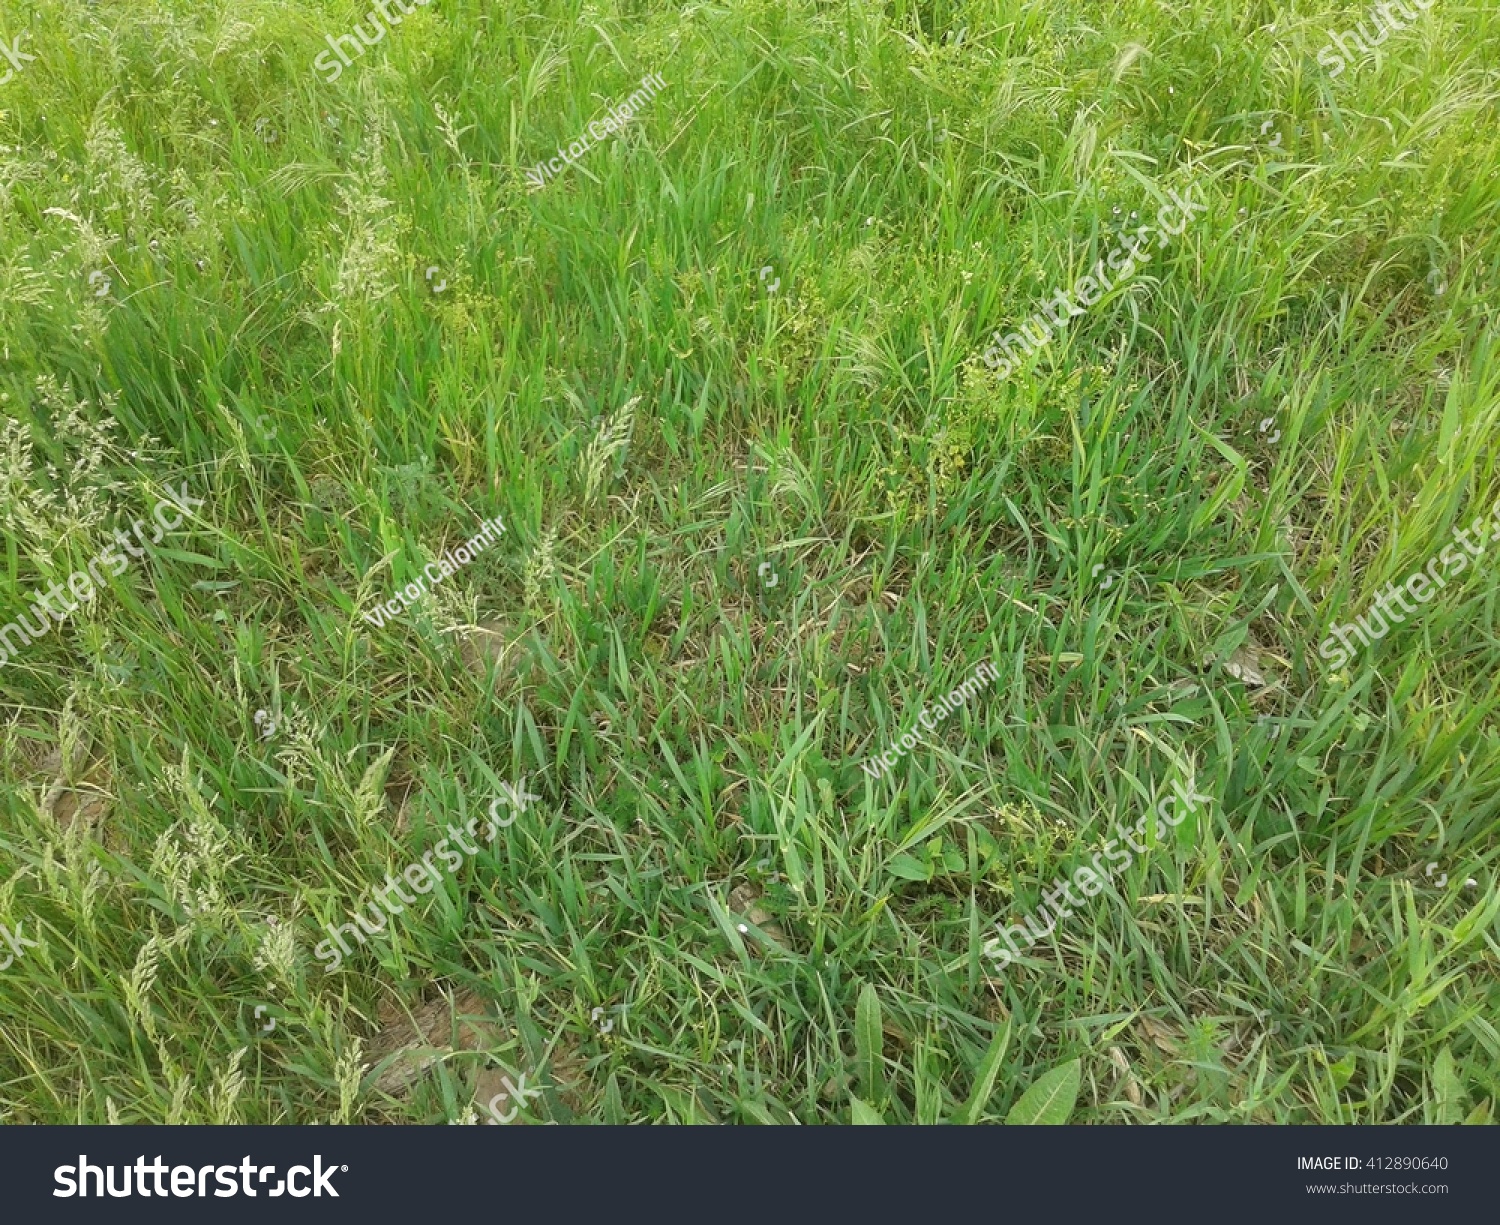 Background of a green grass. Green grass texture #412890640